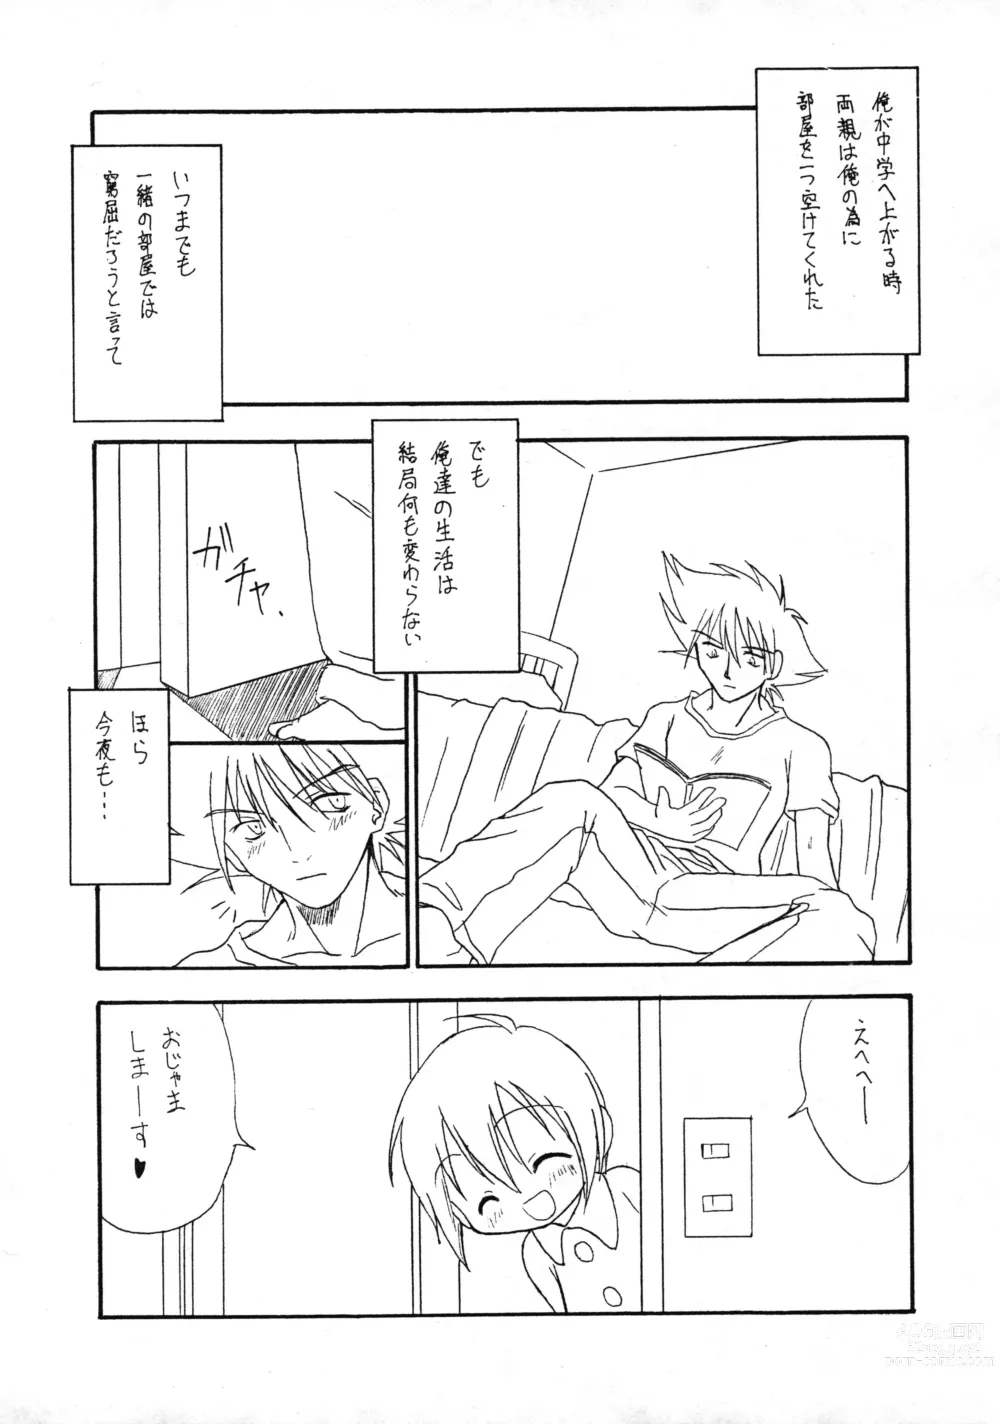 Page 2 of doujinshi Harujion